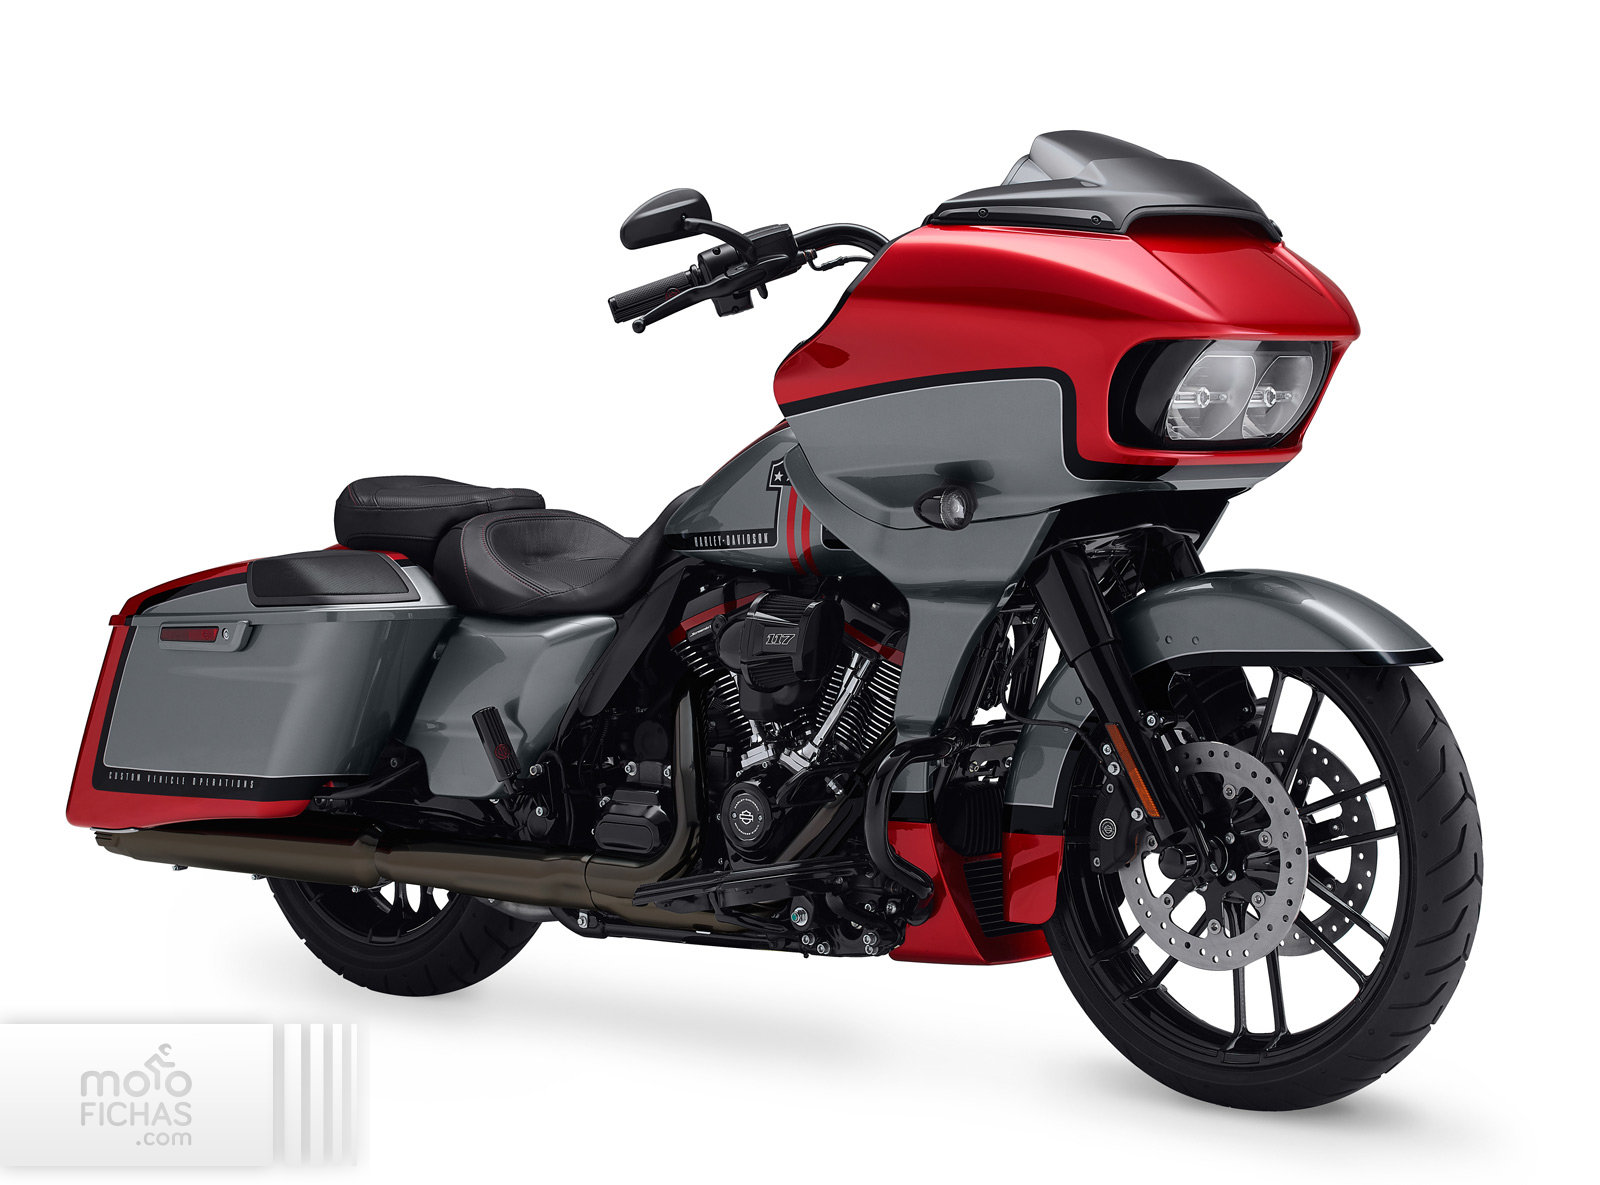 Harley Davidson Cvo Road Glide 2019 Precio Ficha Opiniones Y Ofertas